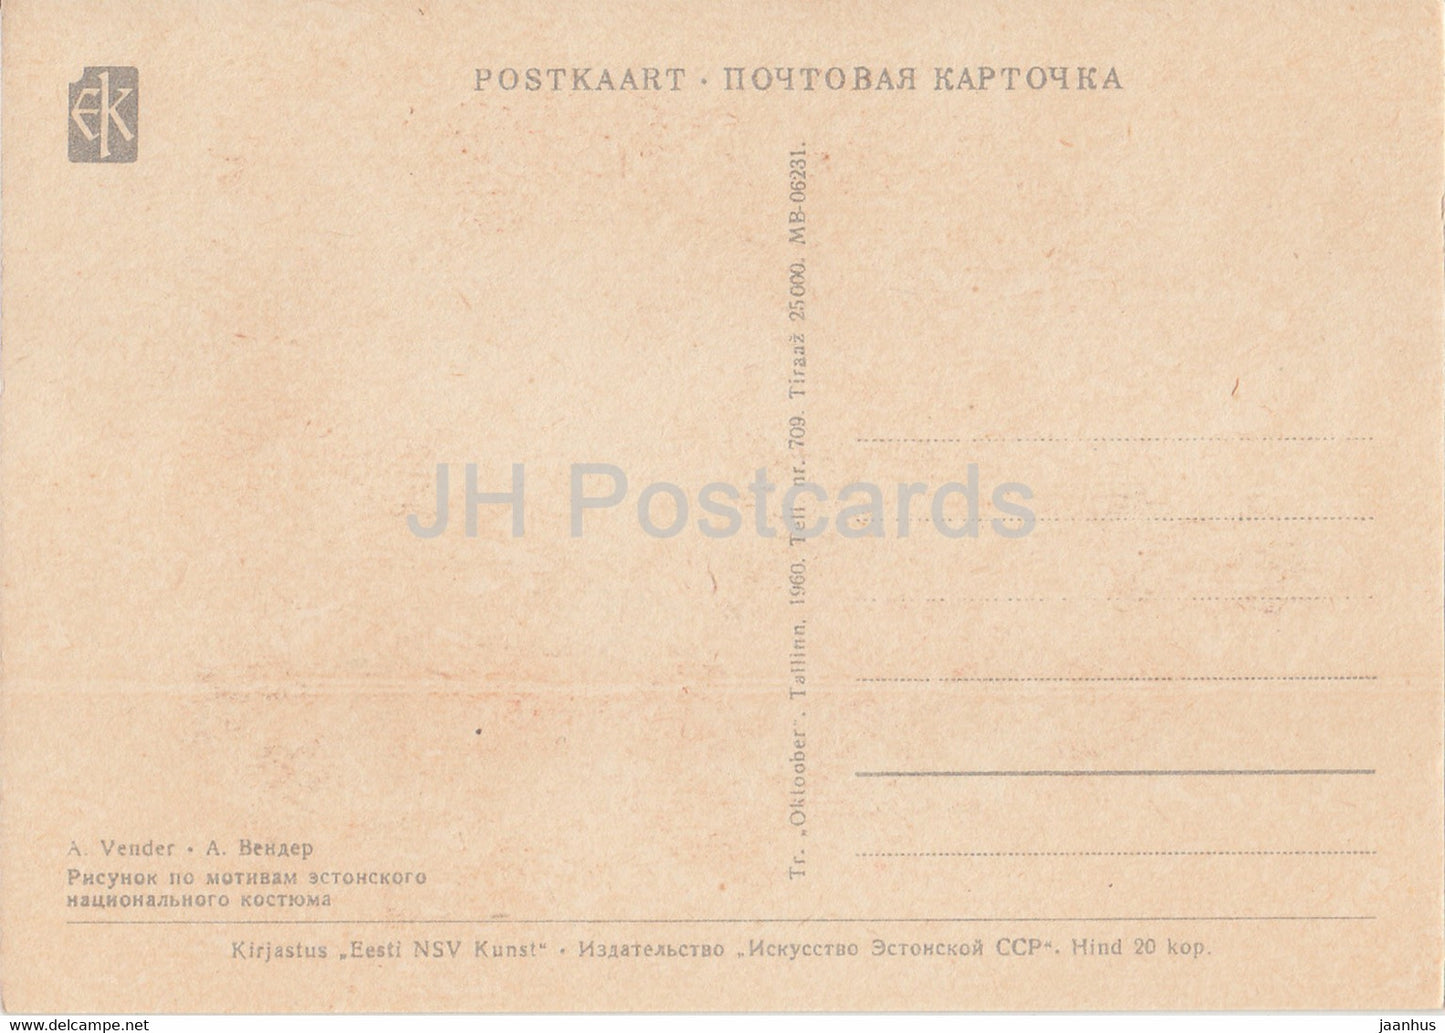 Estnische Volkstrachten – Setu – Illustration von A. Vender – 1960 – Estland UdSSR – unbenutzt